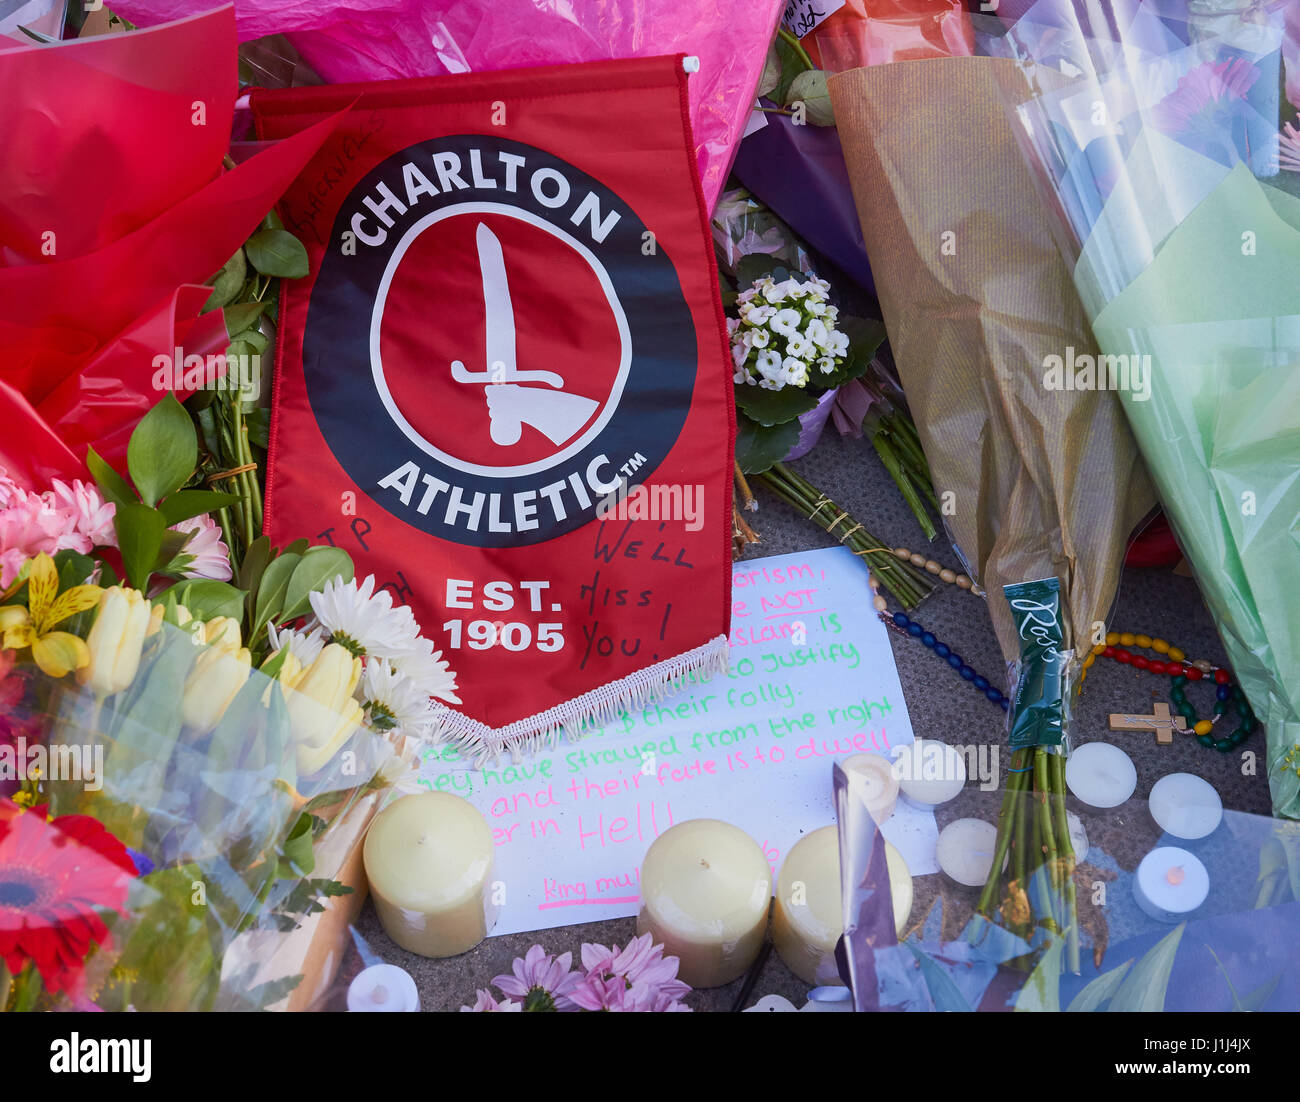 Charlton Athletic Football Club, le drapeau a été appuyée par PC Keith Palmer le policier assassiné dans l'attentat terroriste de Westminster, Londres, Angleterre Banque D'Images